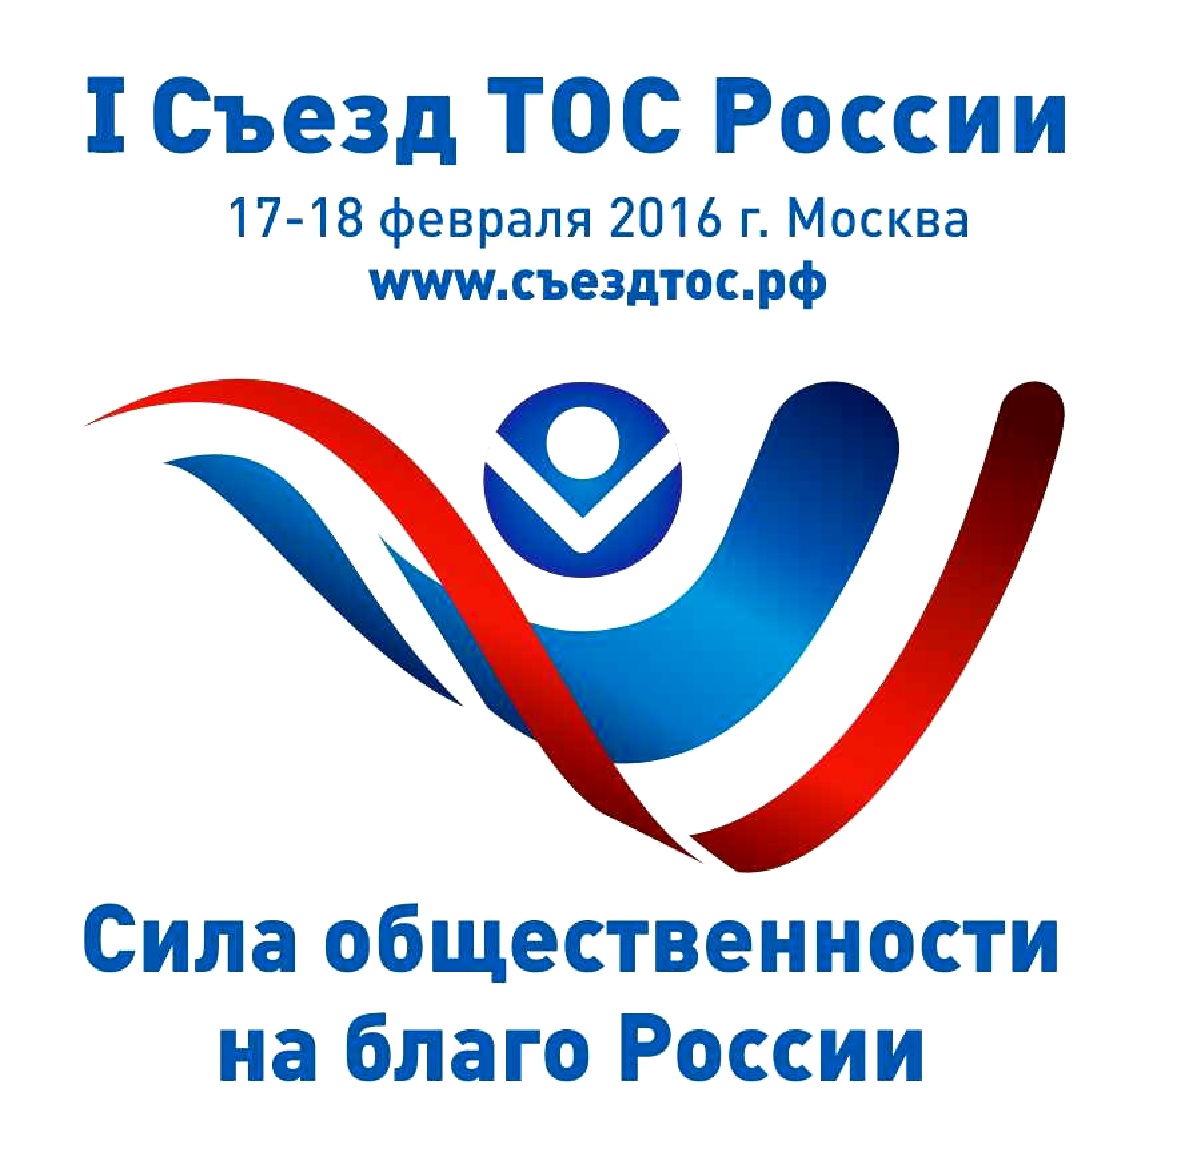 Делегация из Ивановской области примет участие во всероссийском съезде ТОС